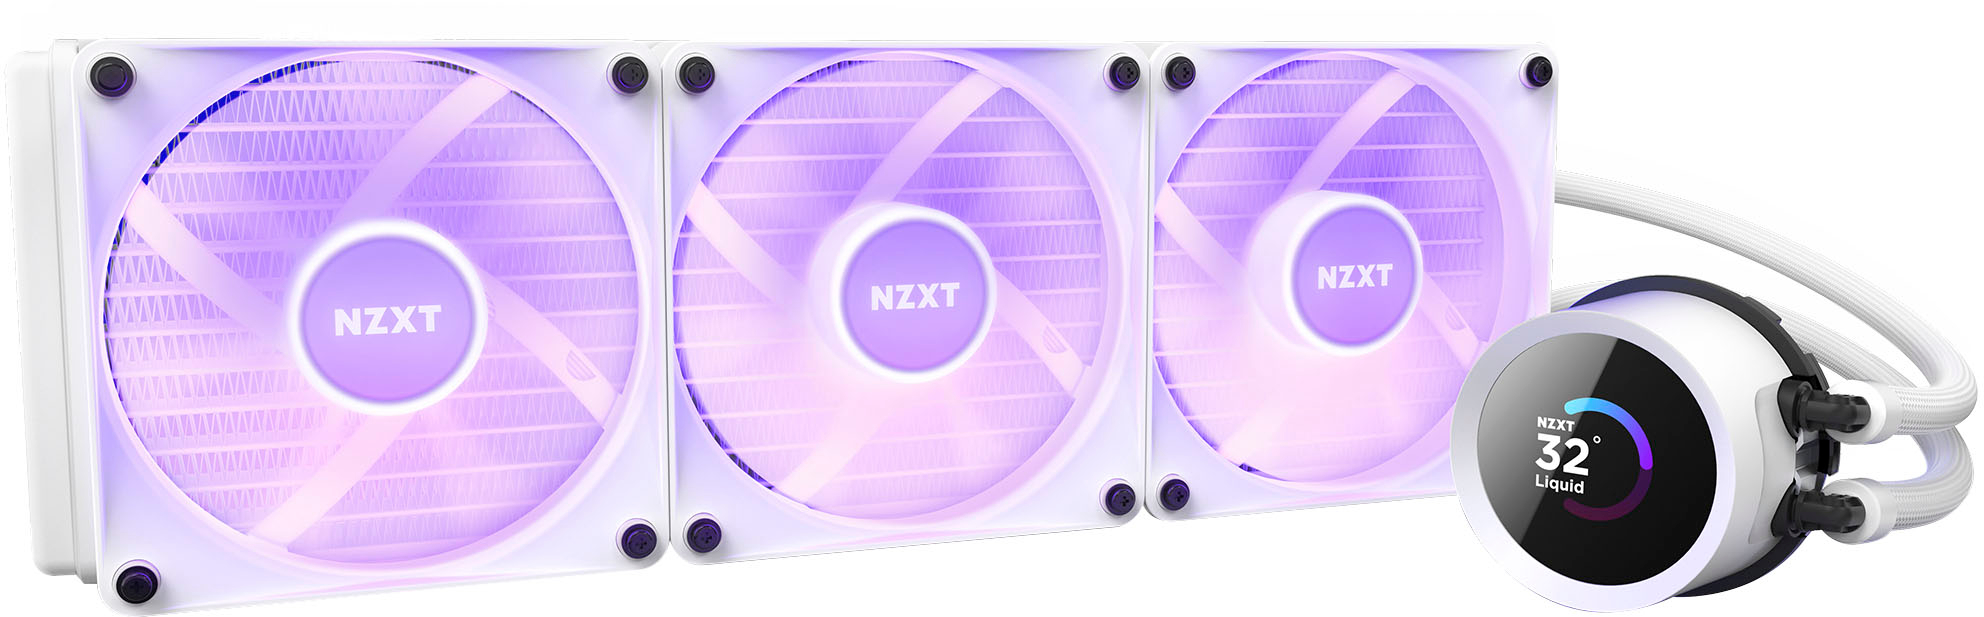 NZXT Kraken 360 - RL-KN360-B1-360mm AIO CPU Wasserkühlung - 1,54 LCD  Display 240x240-3x120mm PWM Fans - EIN Breakoutkabel zur einfachen  Installation